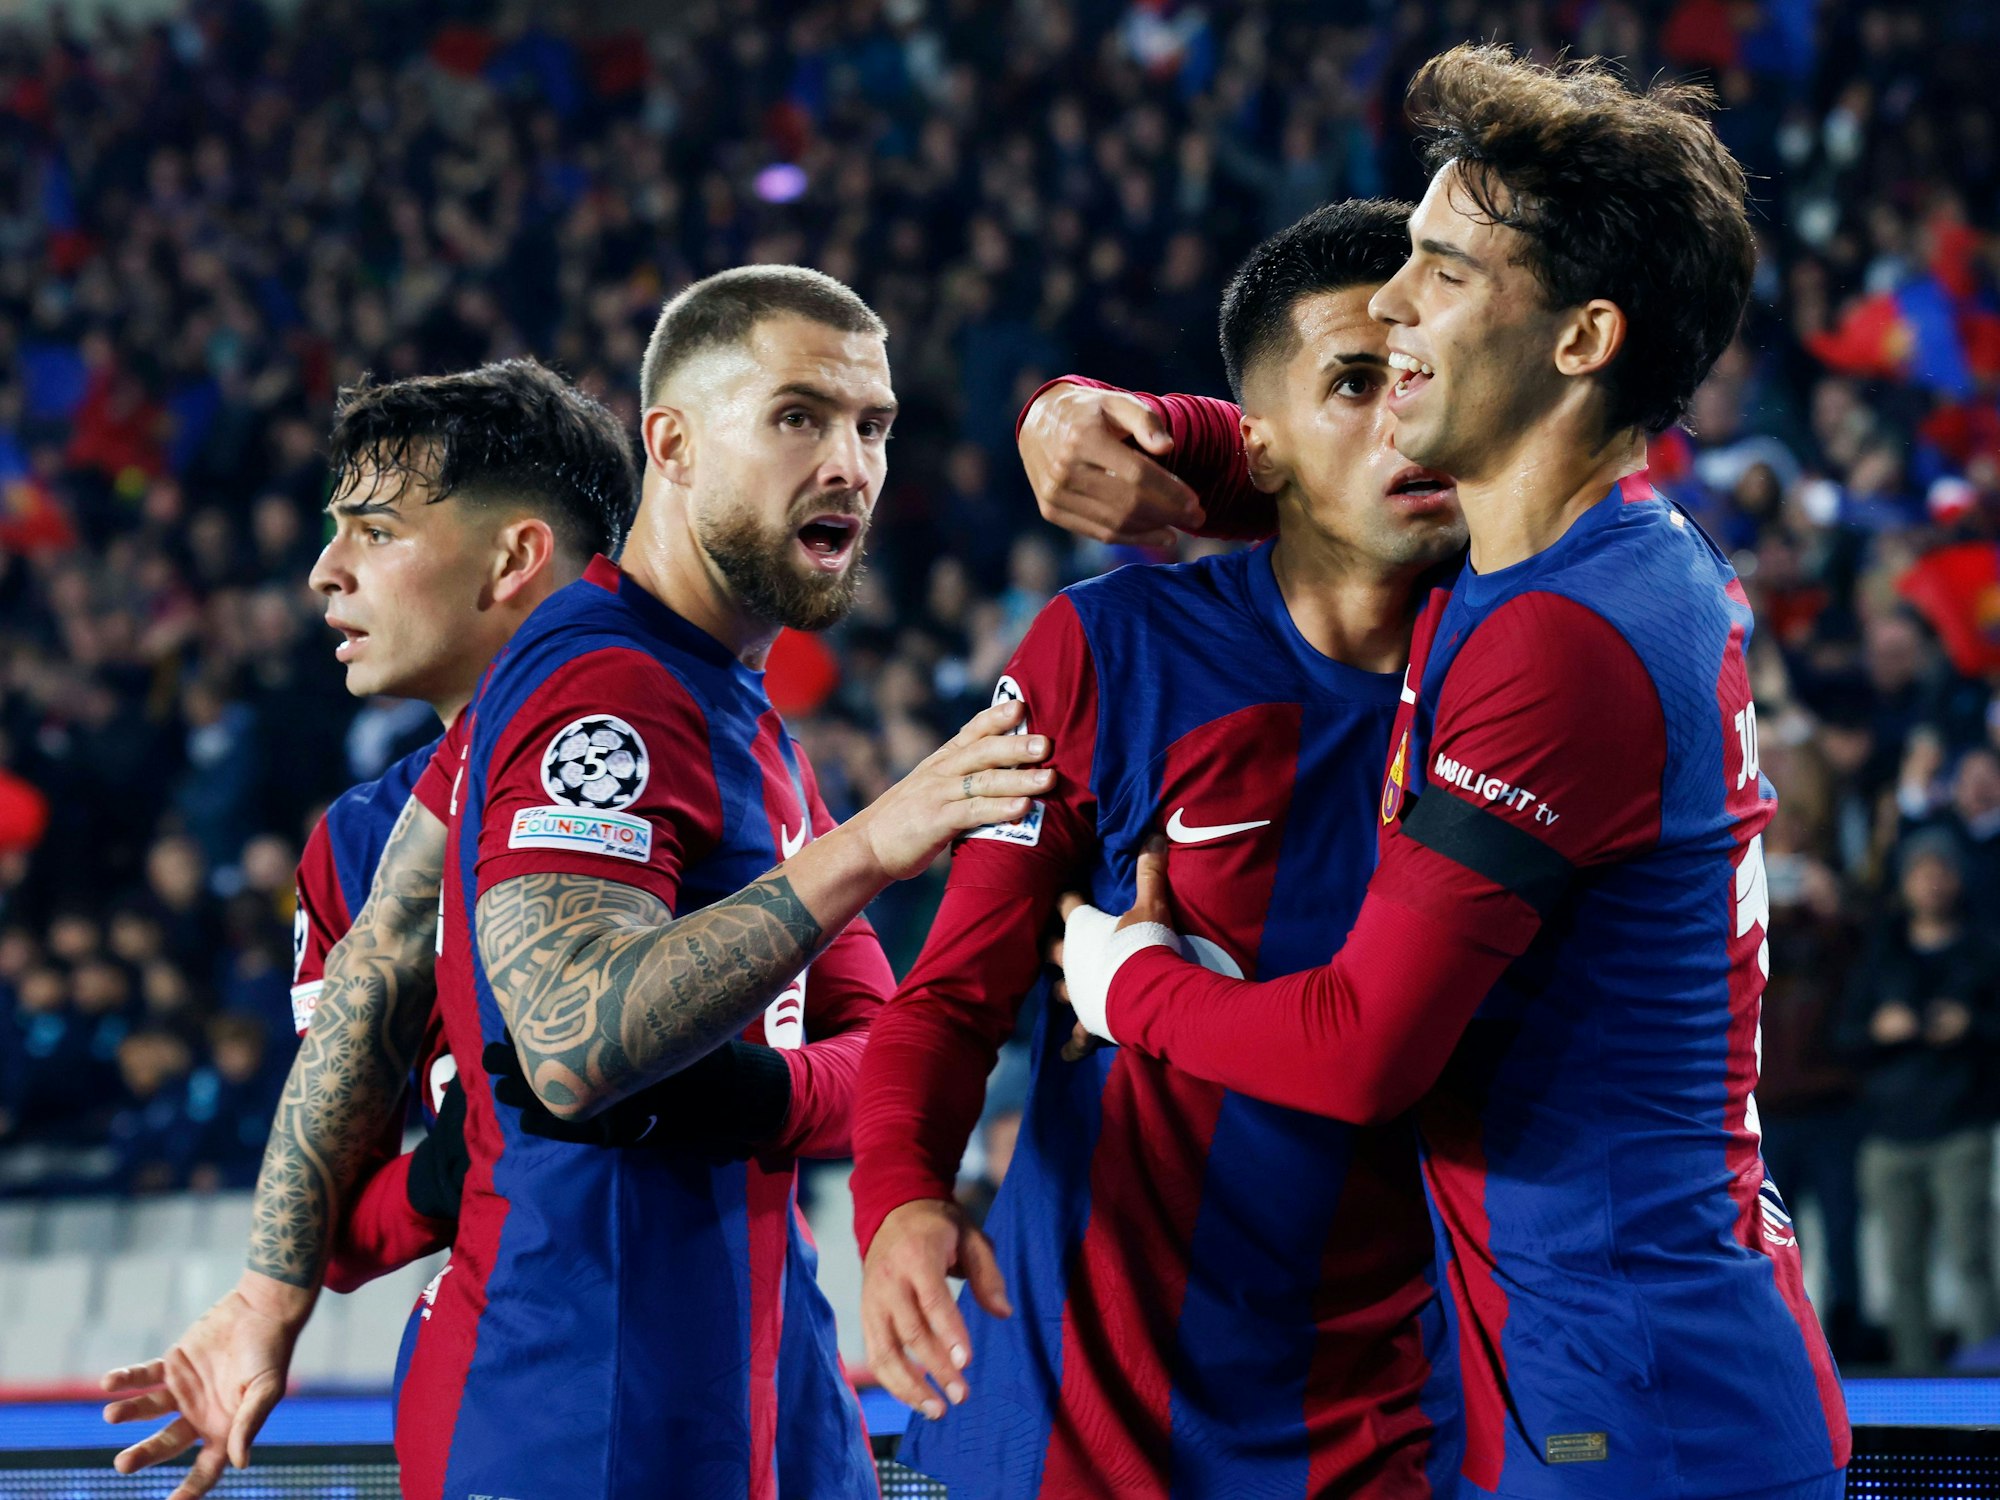 Die Spieler des FC Barcelona jubeln nach einem Tor.